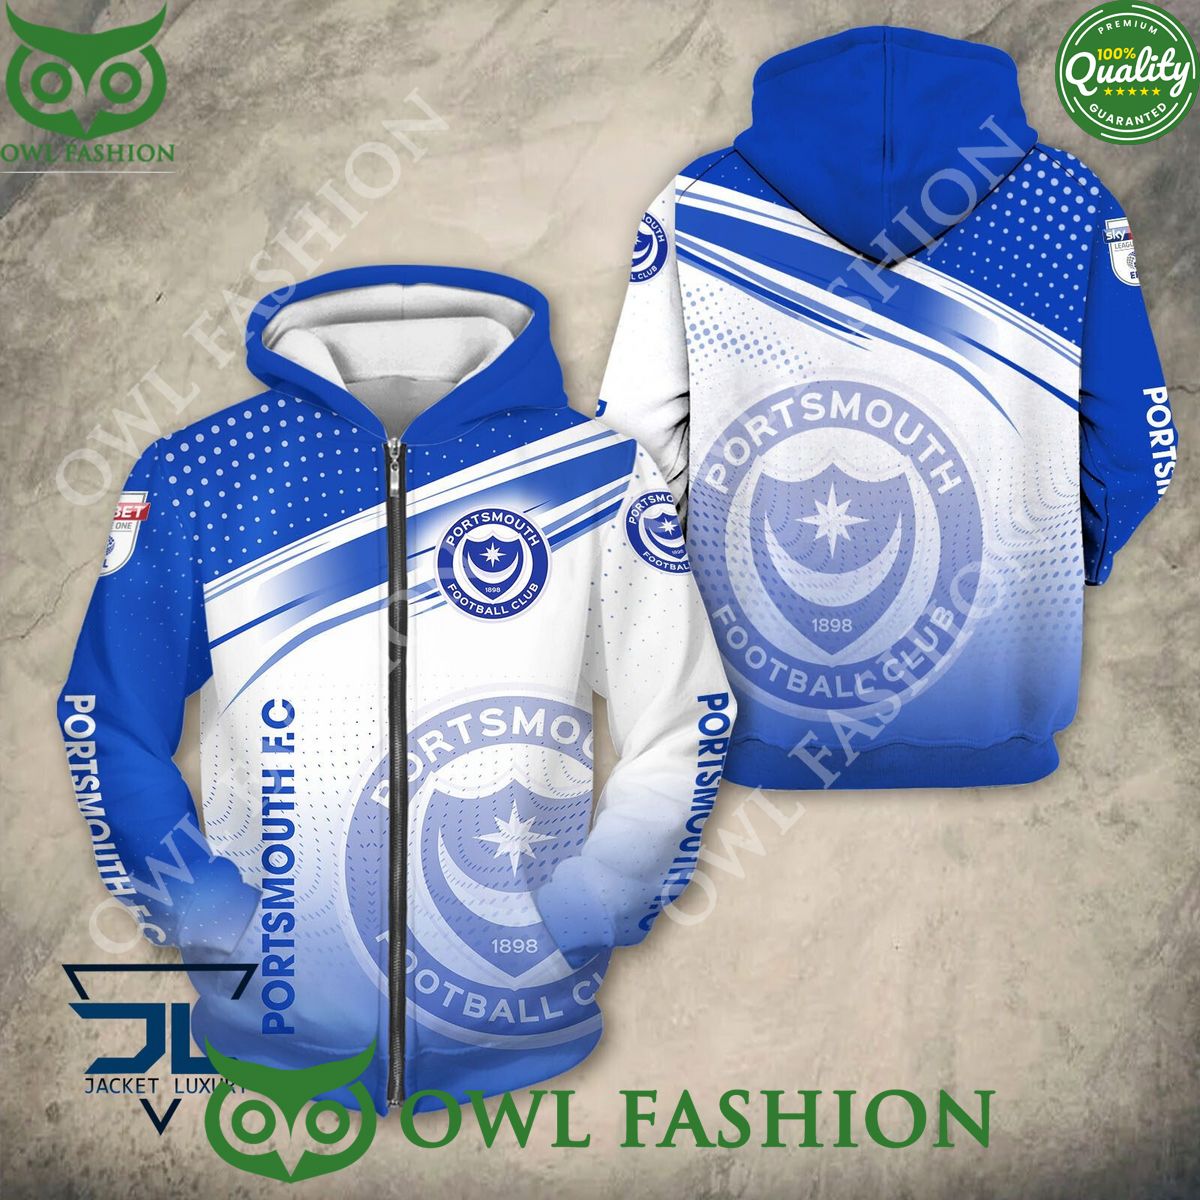 portsmouth f c club logo efl hoodie shirt 2 9fYbH.jpg